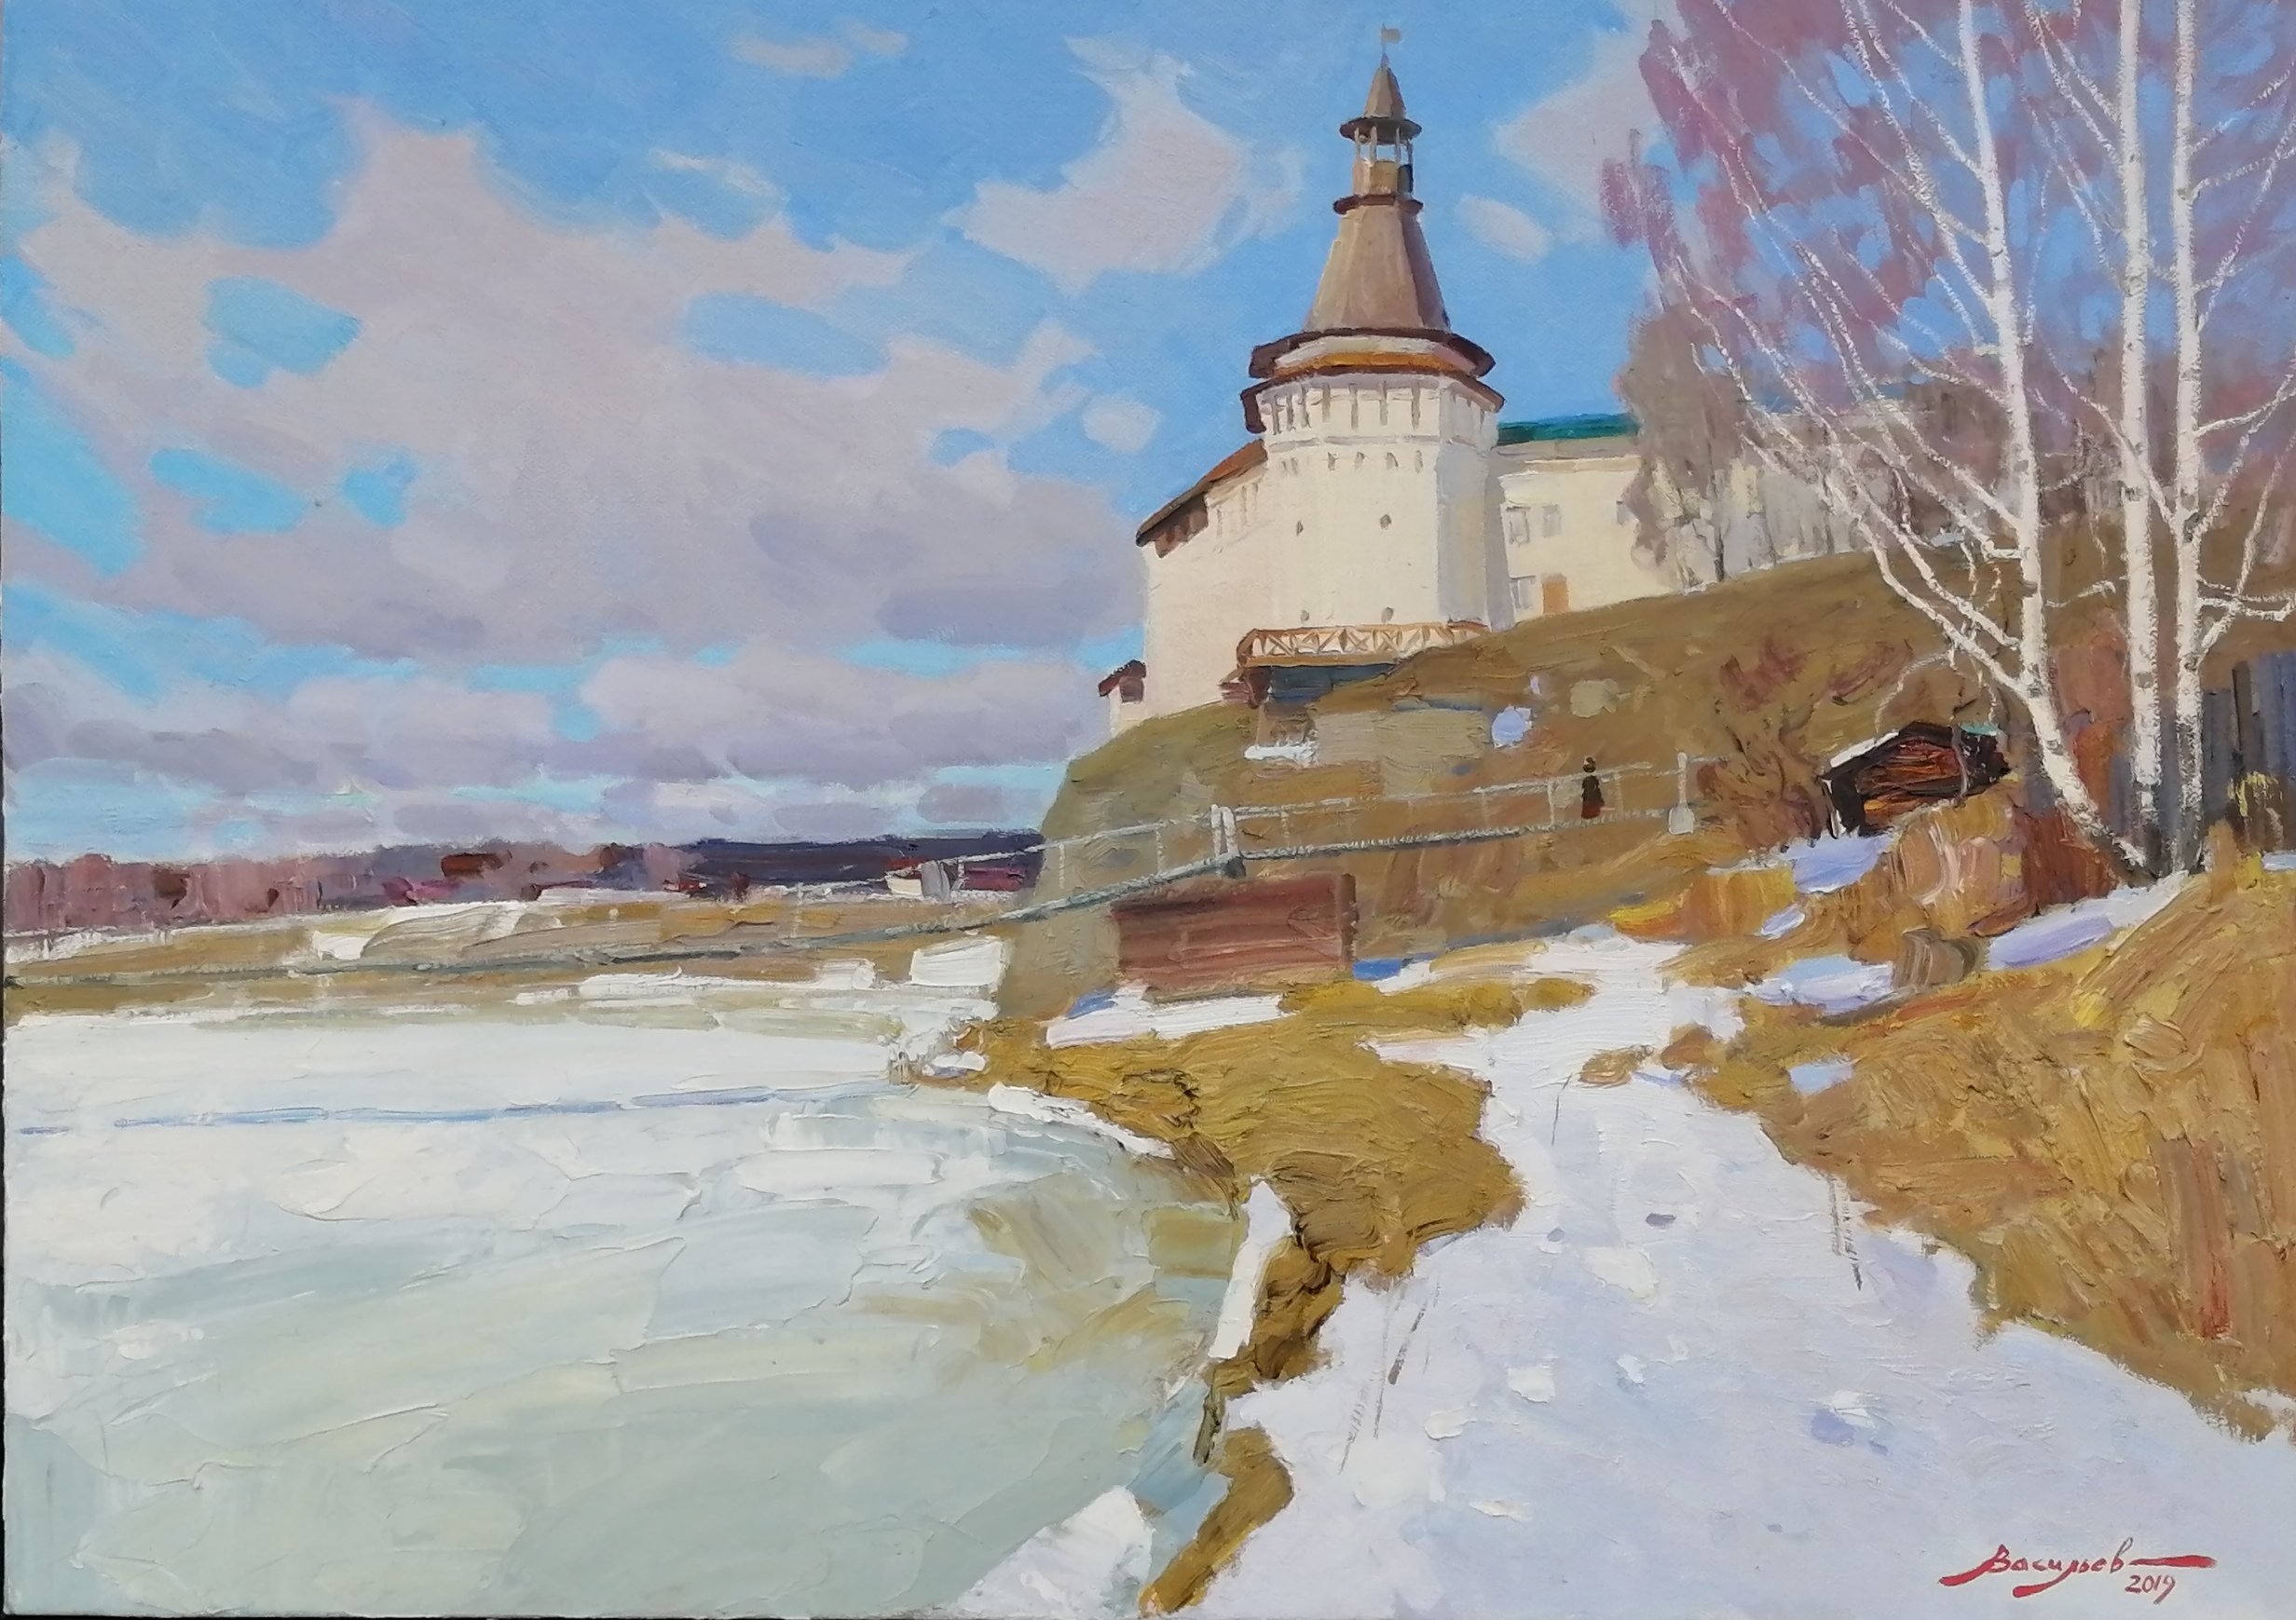 Early spring. Verkhoturye, Dmitry Vasiliev, Buy the painting Oil